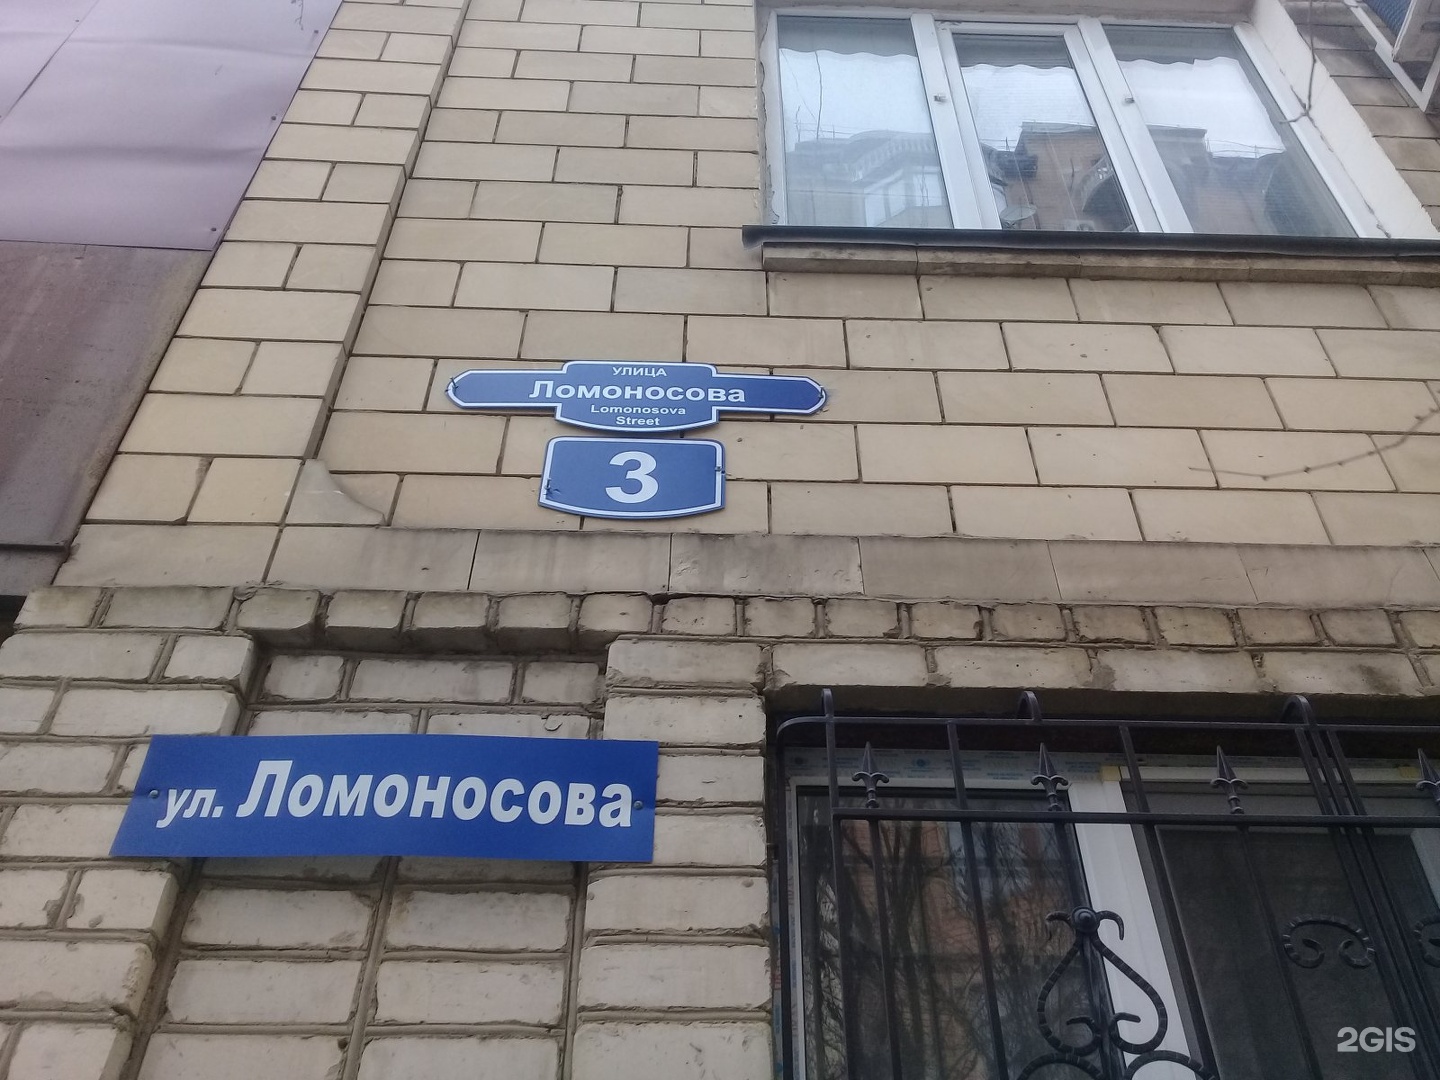 какие улицы площади учреждения носят имя ломоносова в уфе